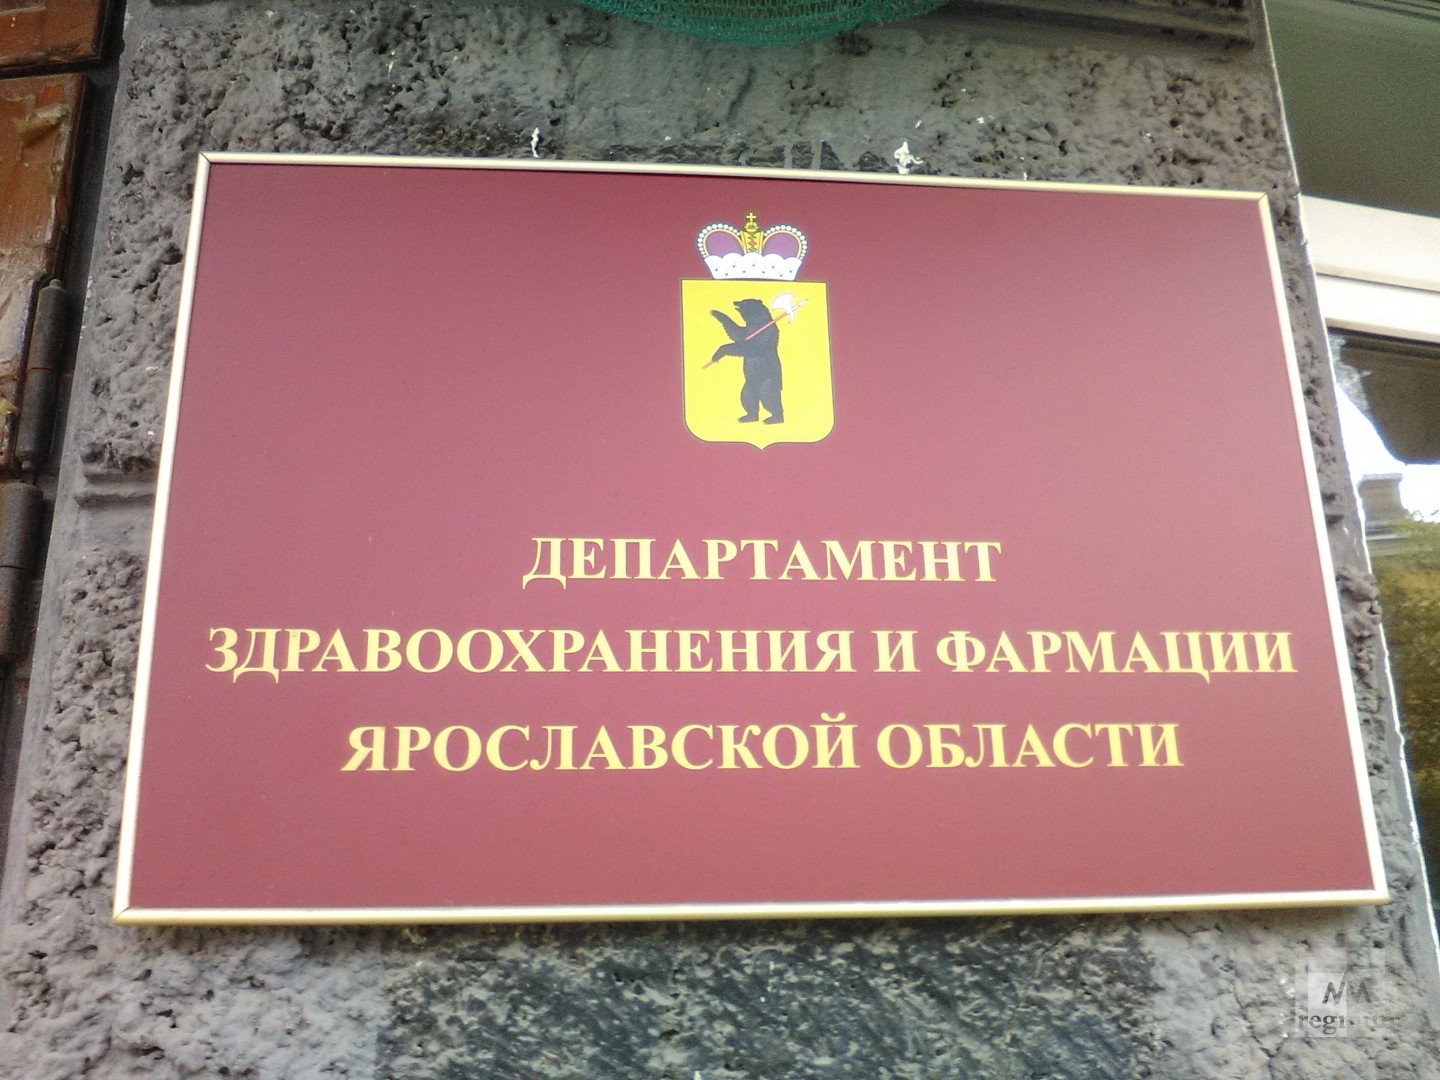 Все ушли болеть: в Ярославской областной Думе отменили комитет по здравоохранению